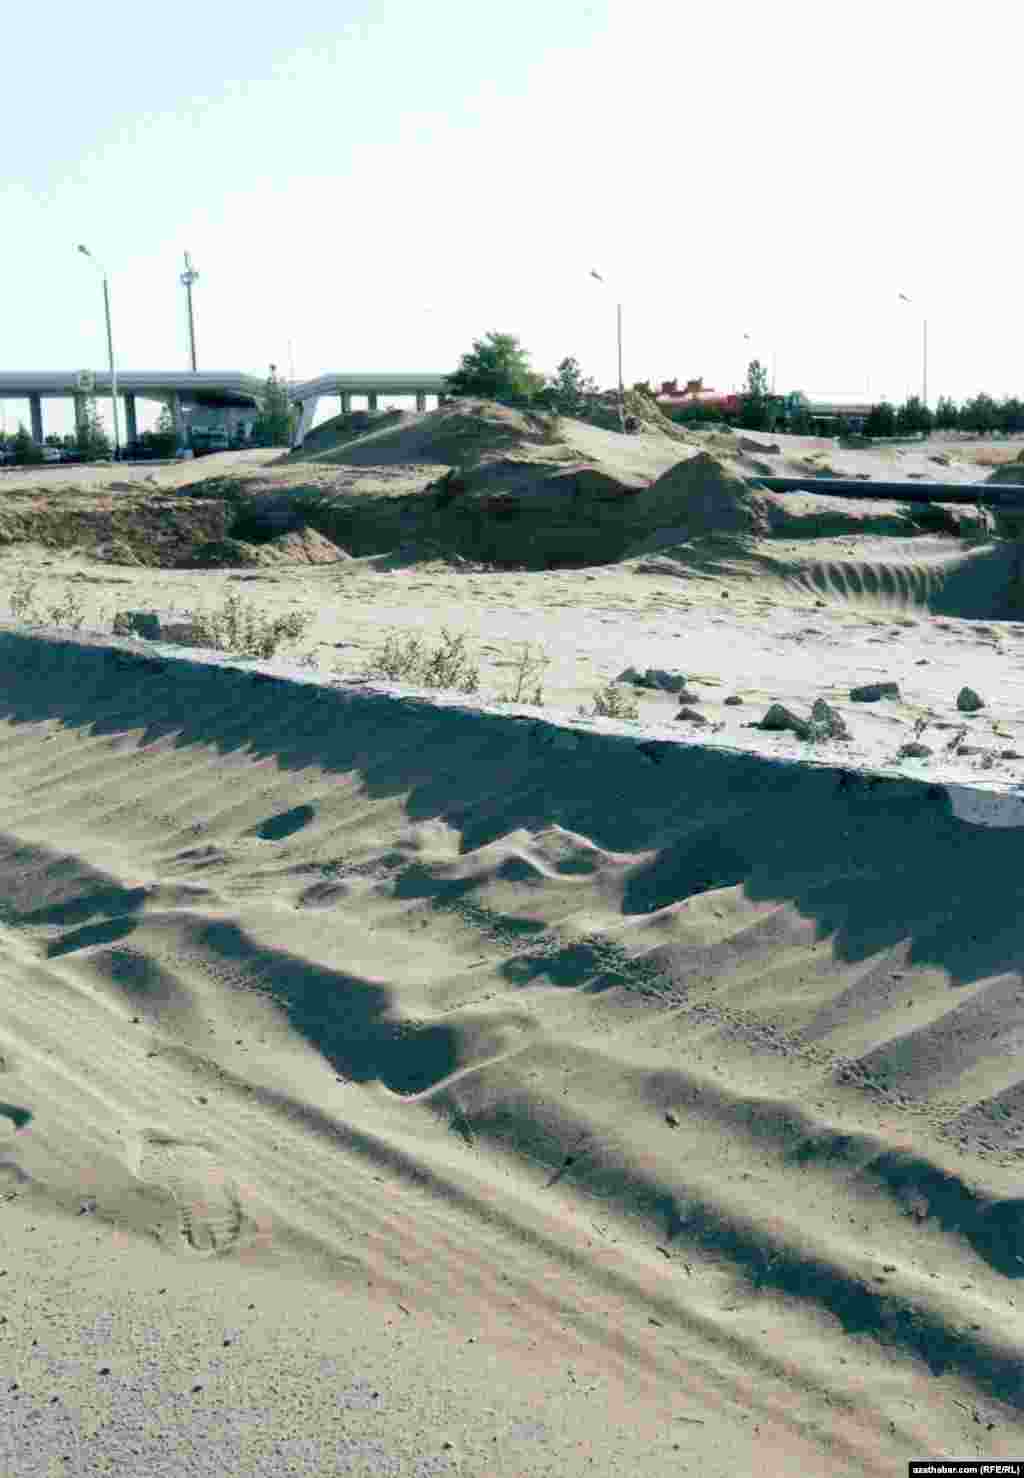 4-й километр трассы Ашхабад-Дашогуз. Песчанные завалы ограничивают доступ к заправочной станции.